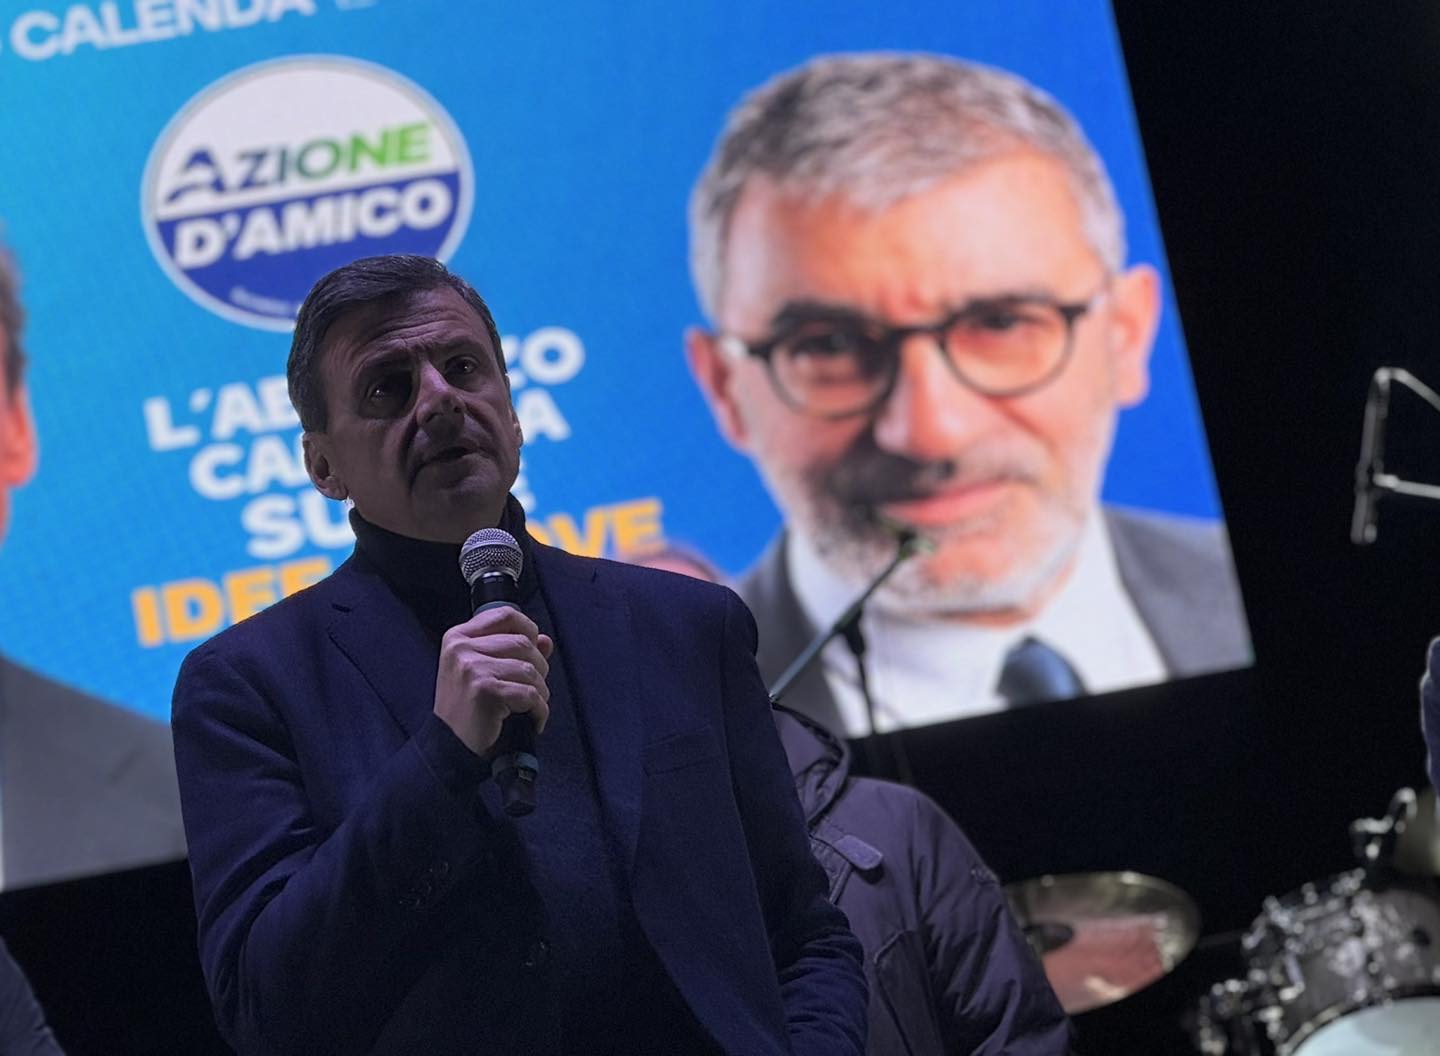 Elezioni regionali, il Leader di Azione Carlo Calenda in Abruzzo a sostegno del candidato presidente Luciano D'Amico